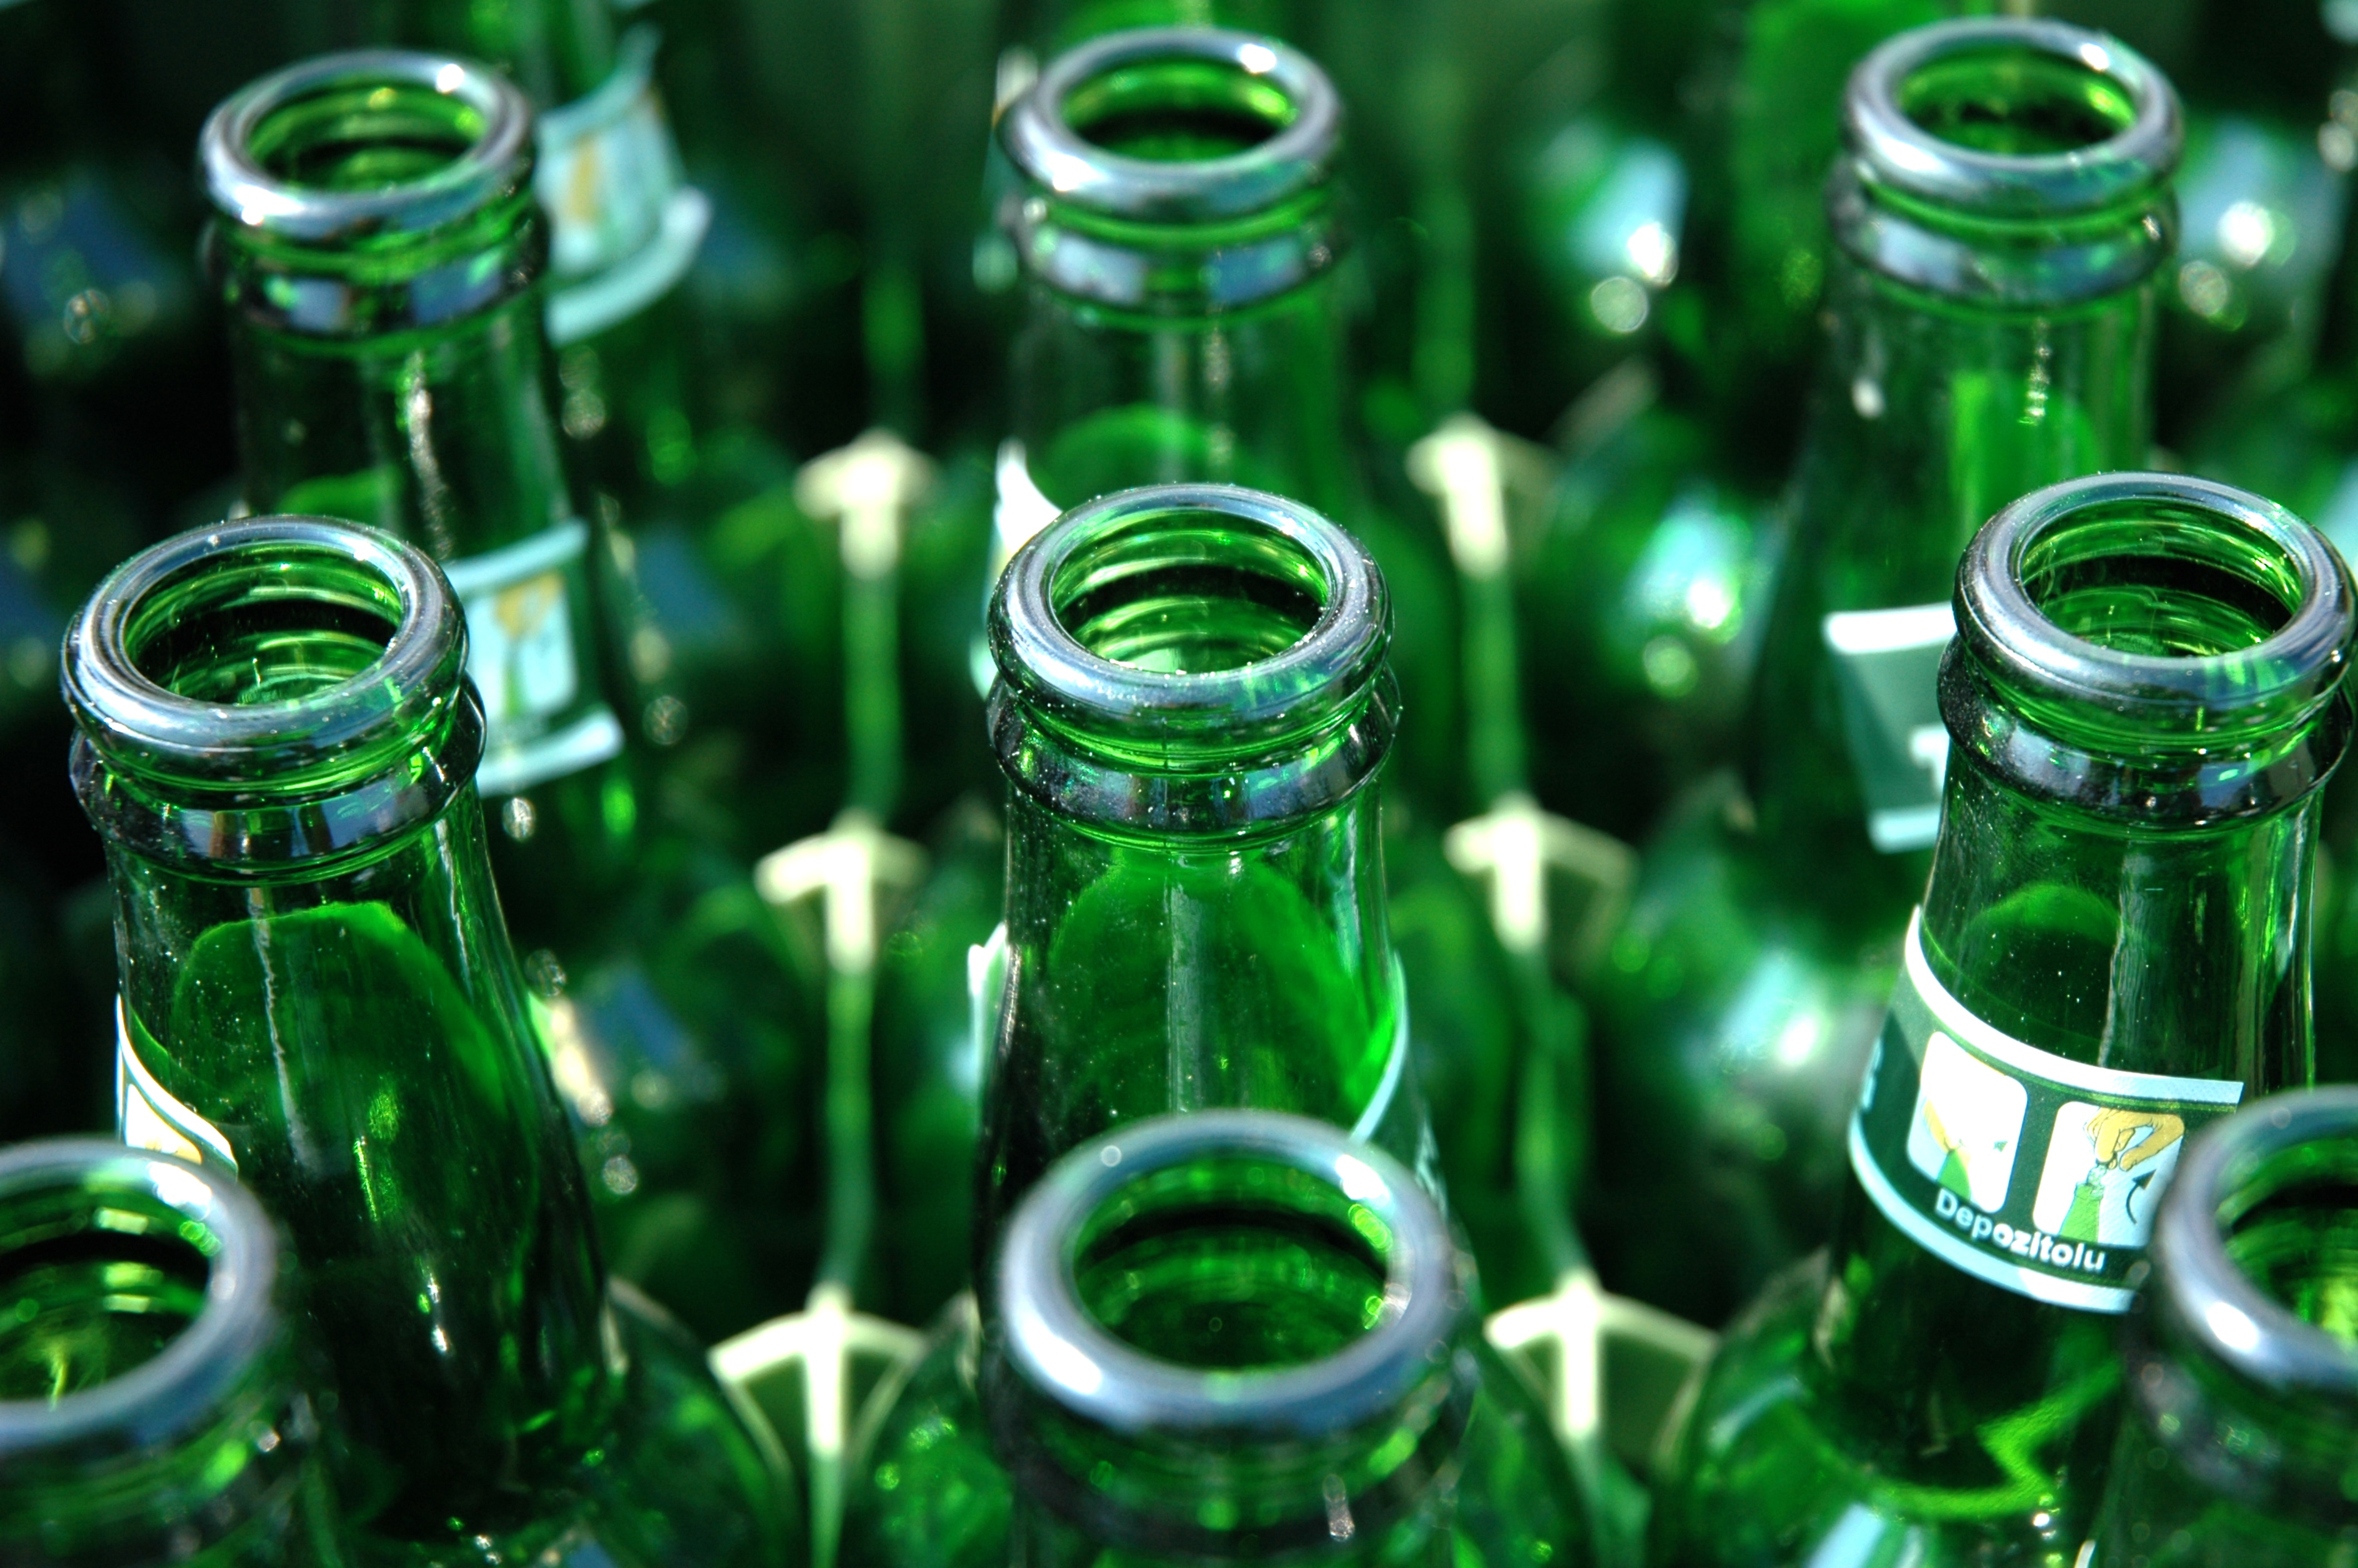 Nine Green Bottles